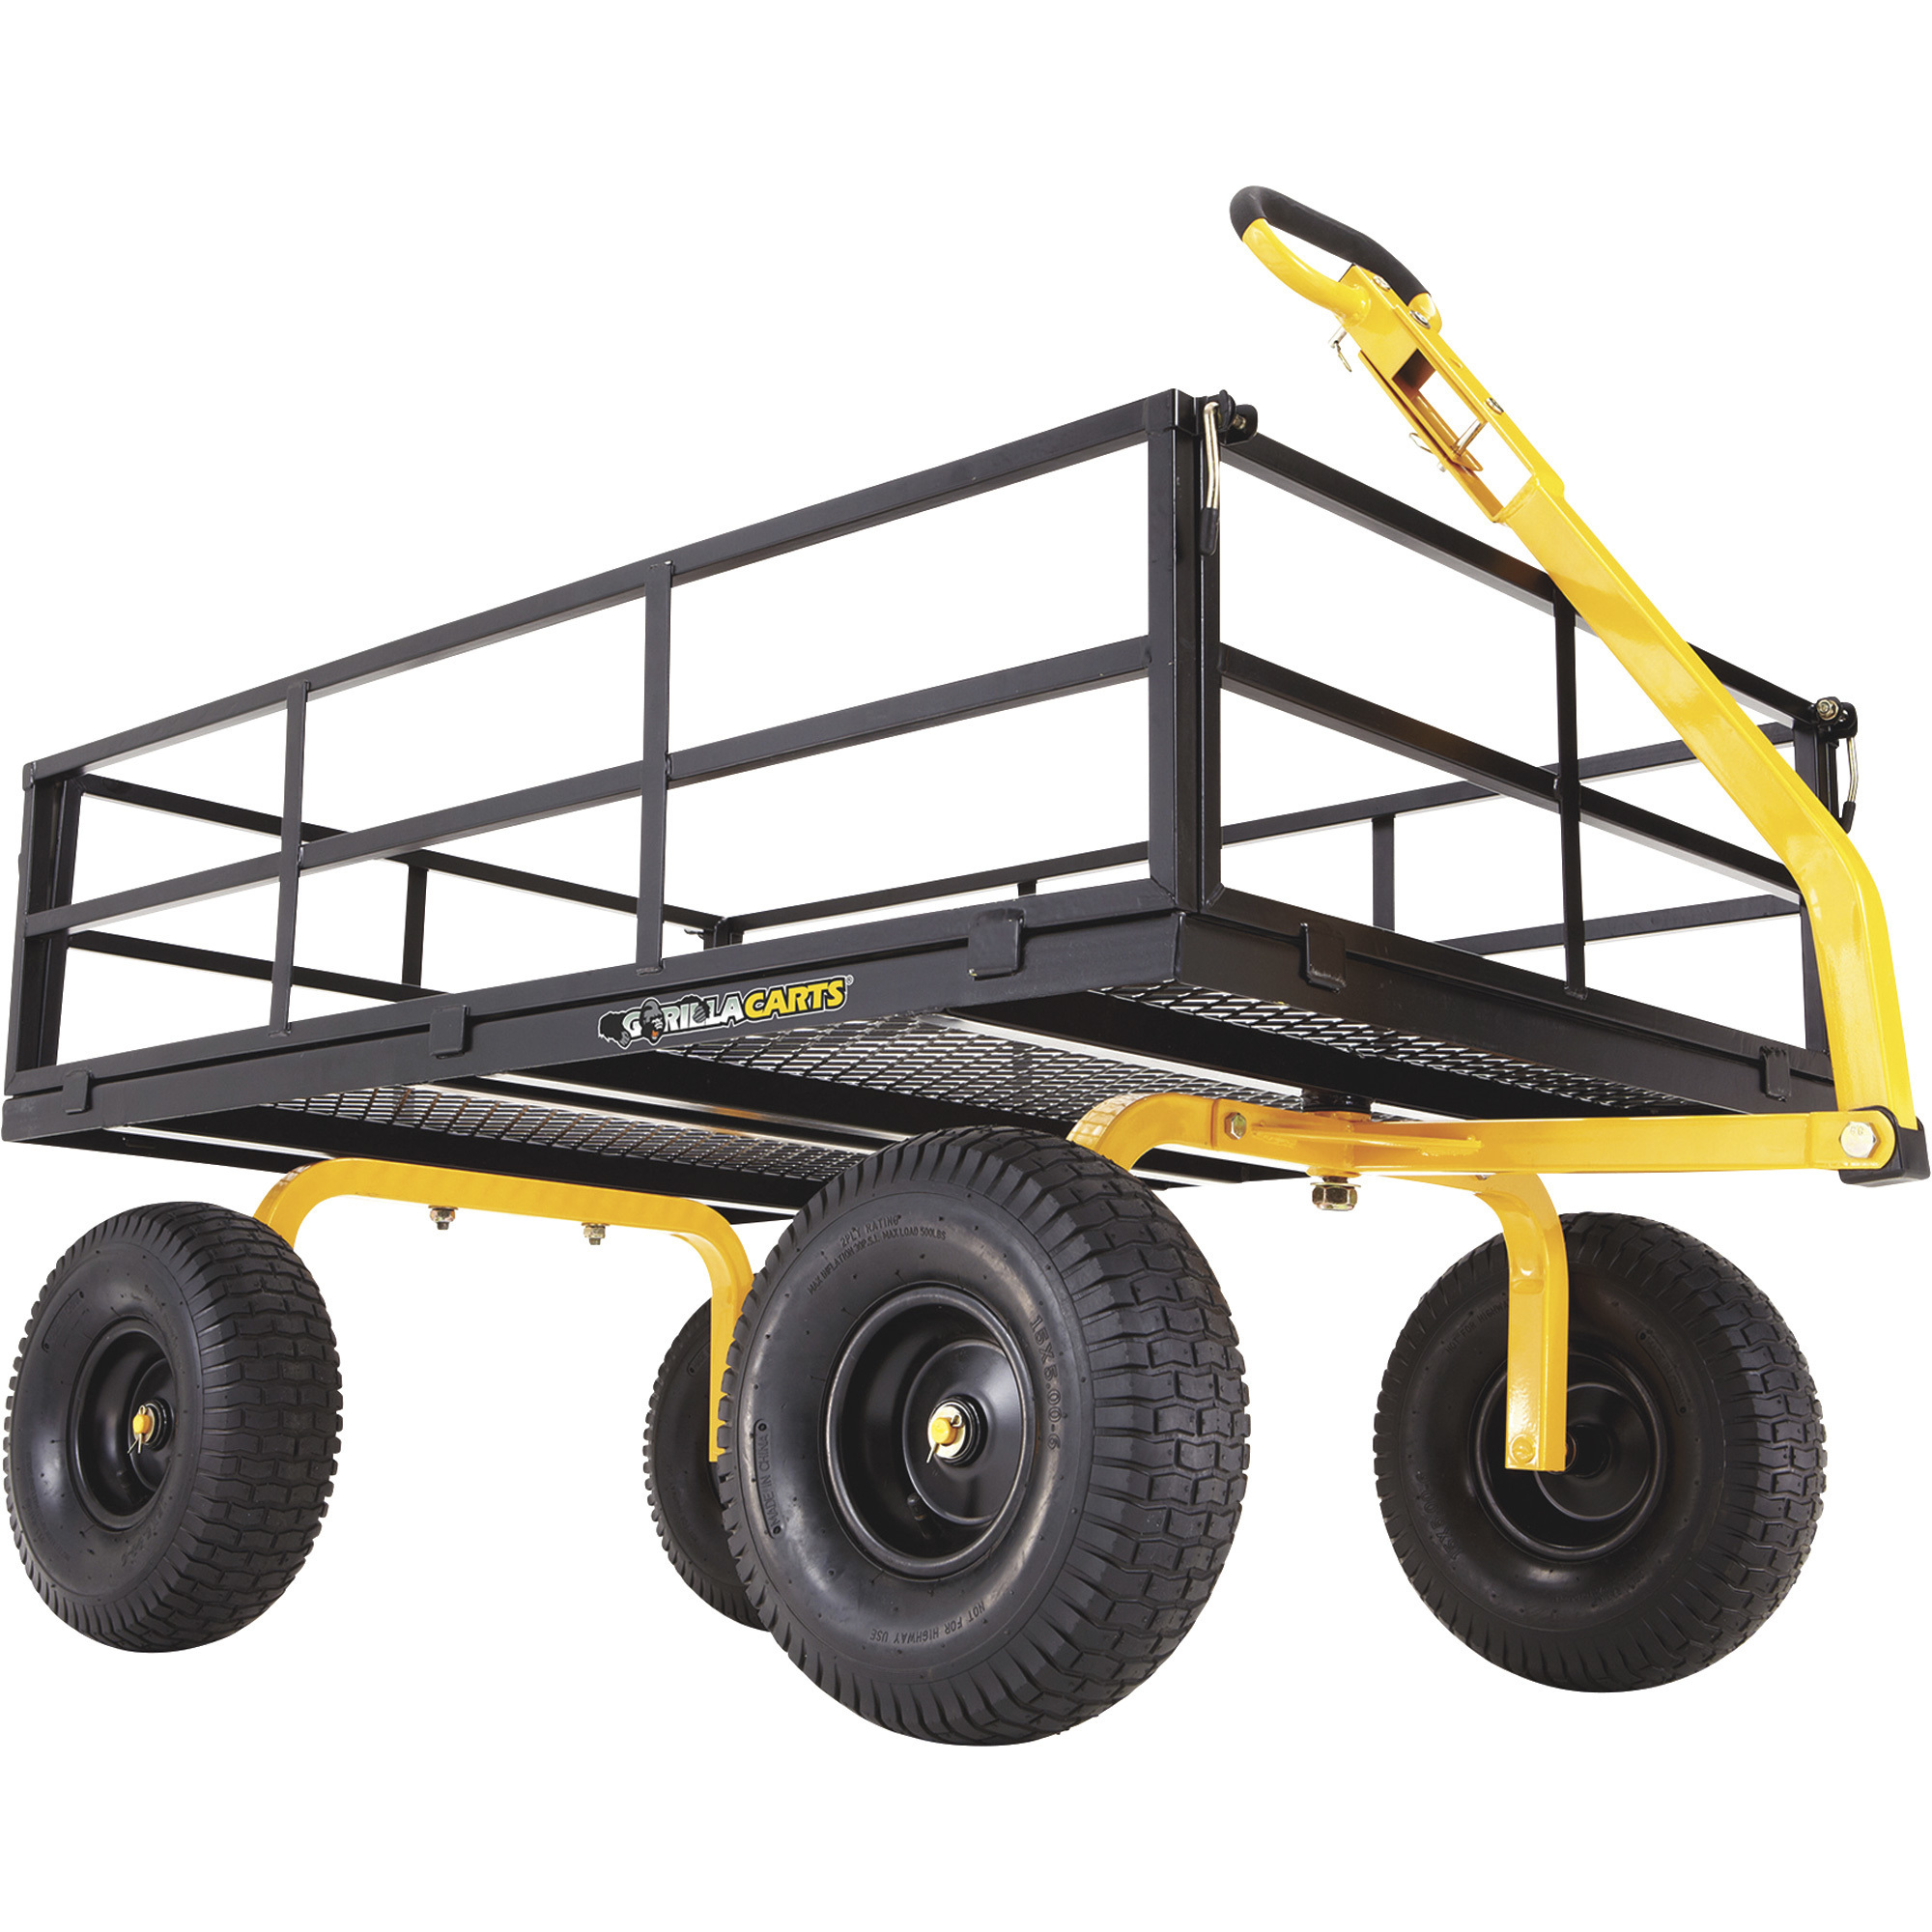 Gorilla Carts Heavy-Duty Steel Utility Cart, 1400-Lb. Capacity, 12 Cu. Ft., Model GOR1400-COM